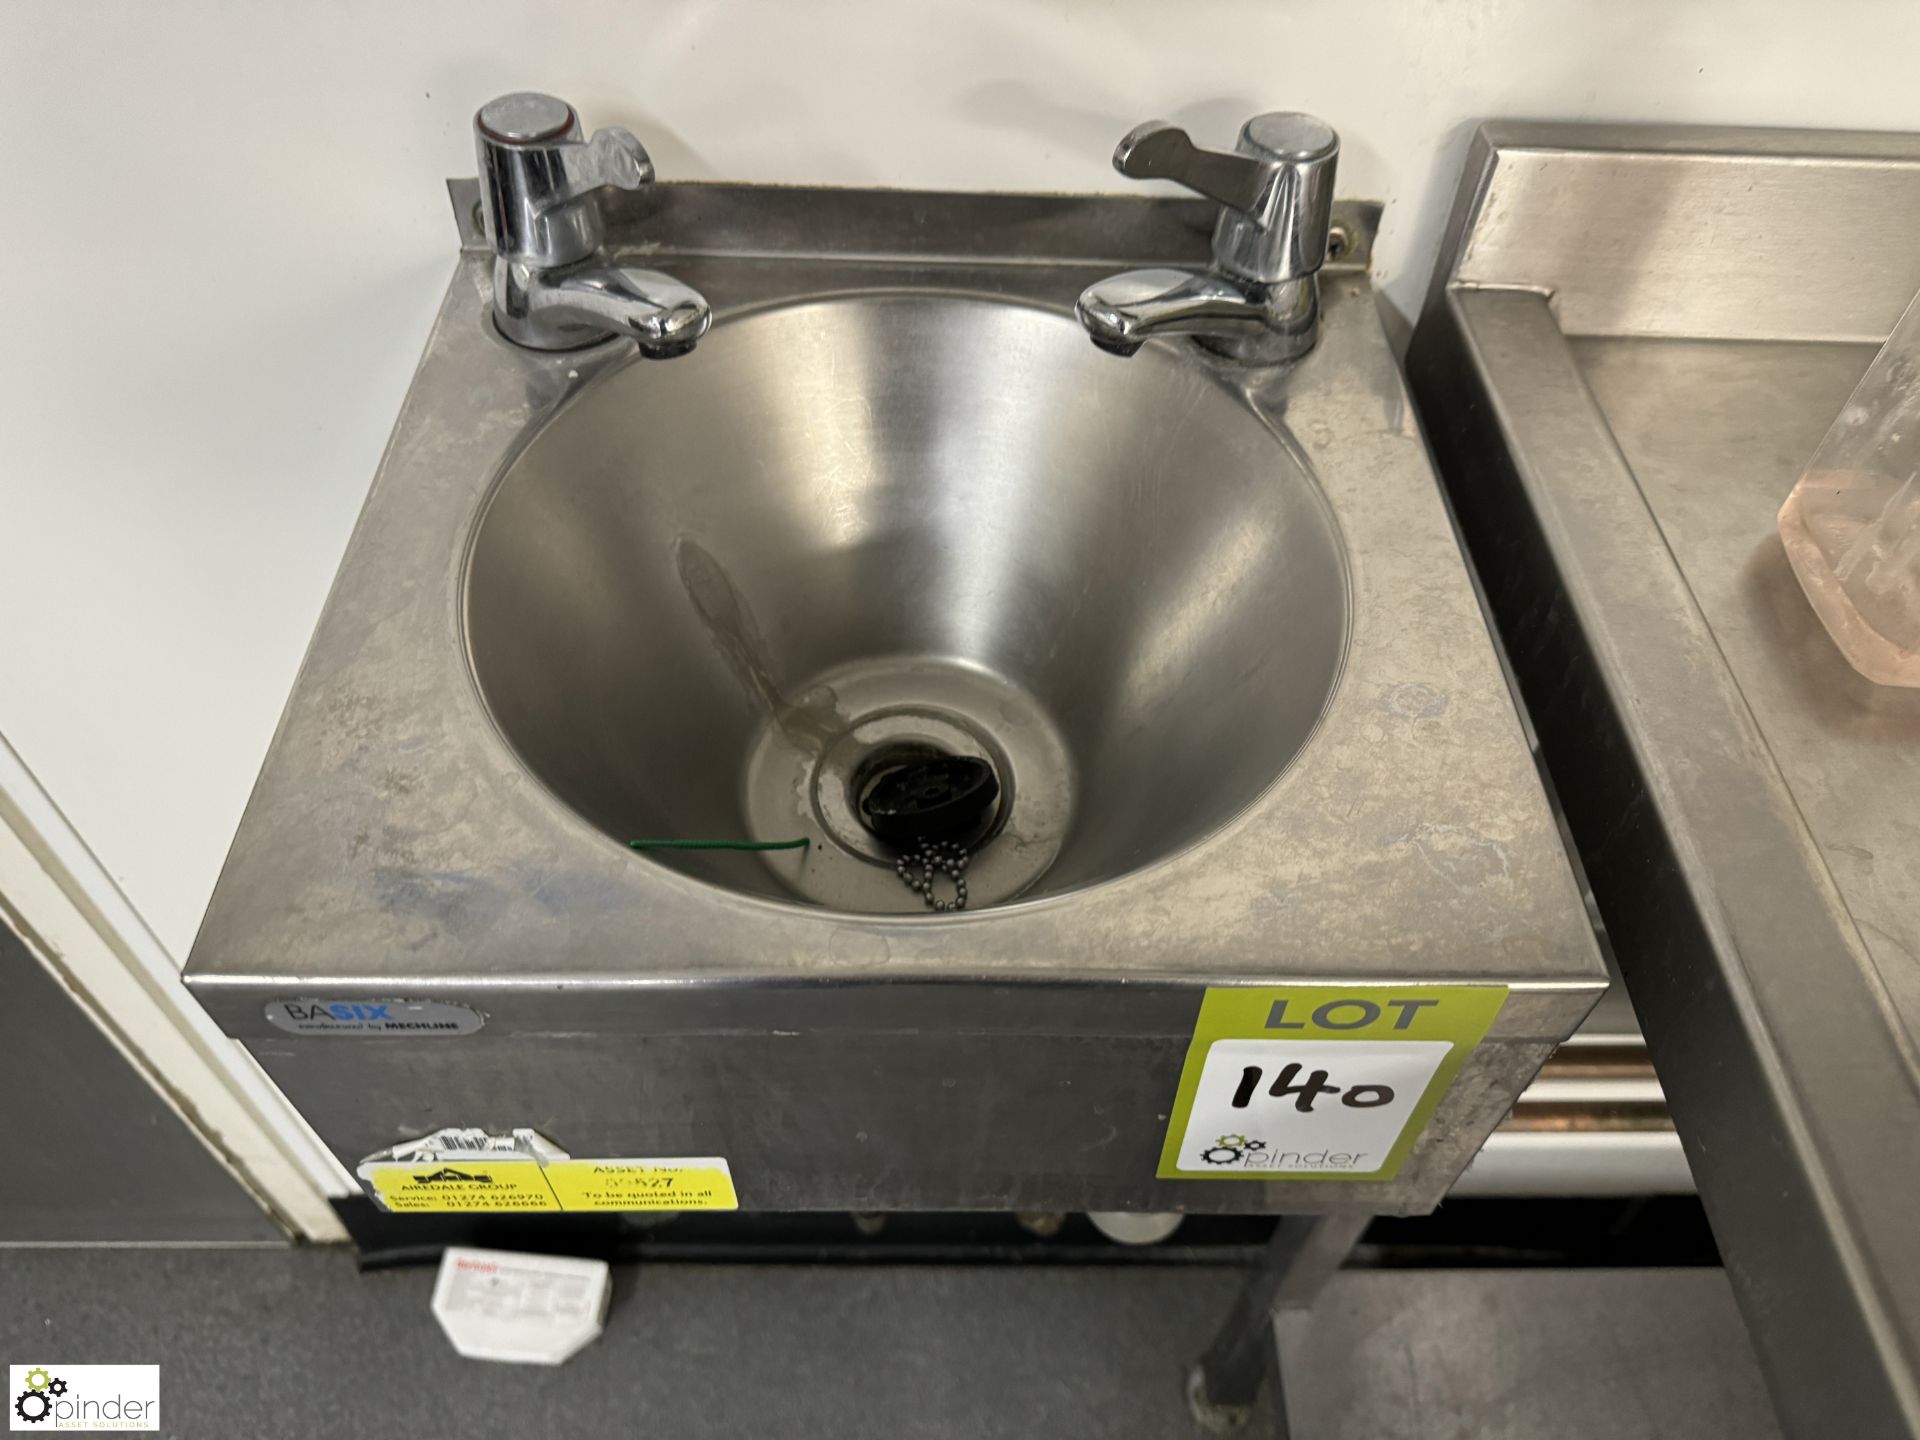 Stainless steel Hand Wash Basin, 380mm x 330mm (location in building - level 11 main kitchen) - Bild 2 aus 3